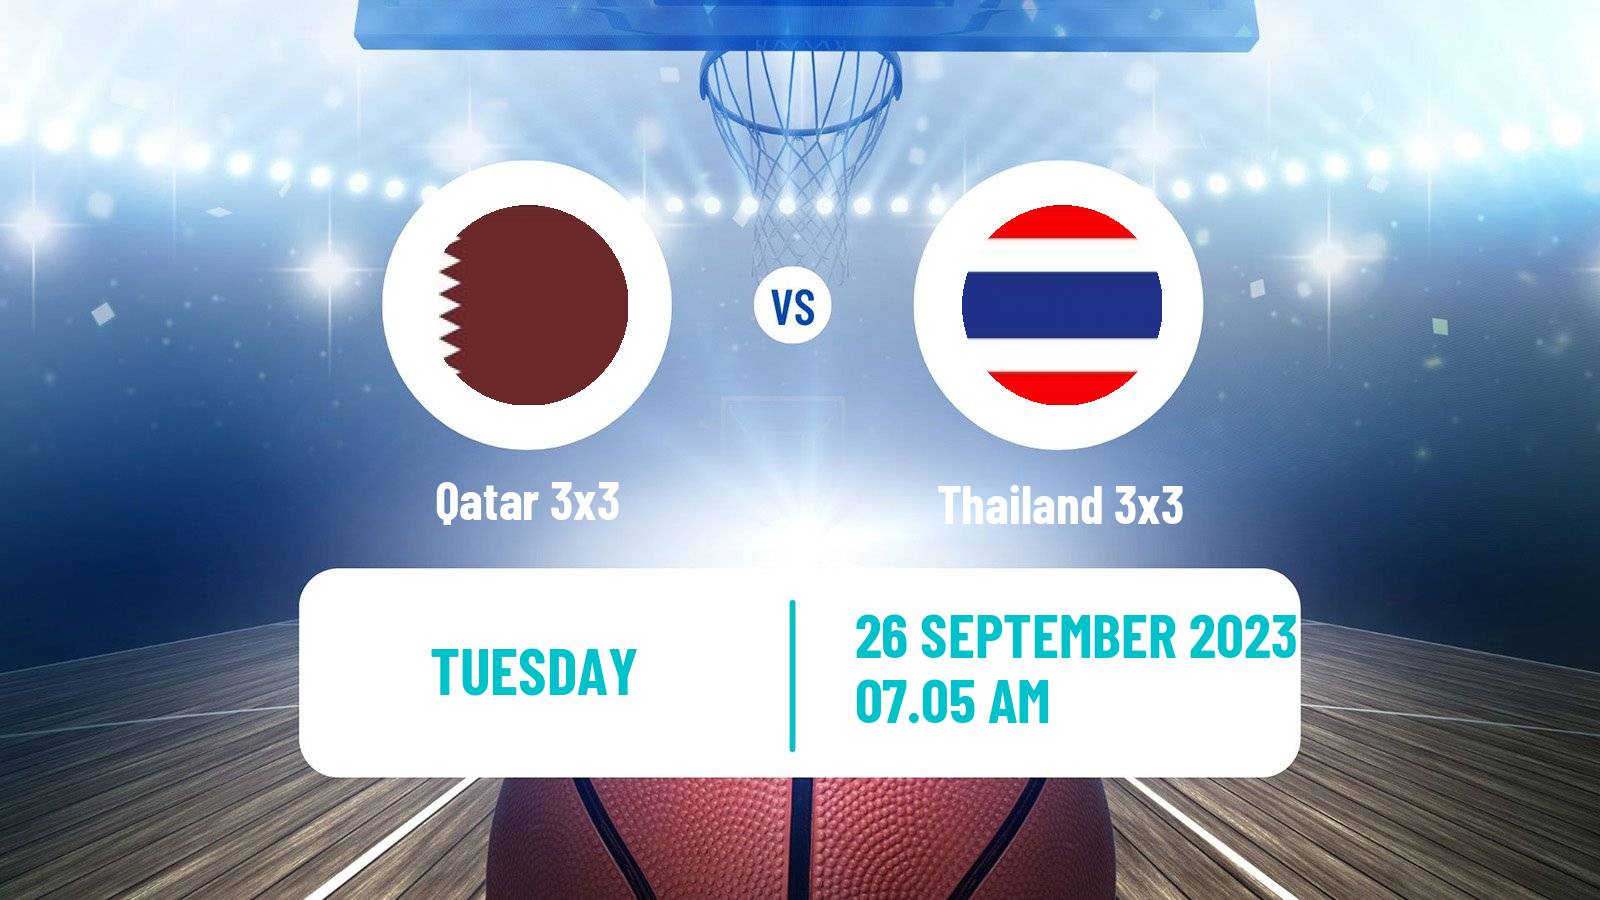 Basketball Asian Games Basketball 3x3 Qatar 3x3 - Thailand 3x3